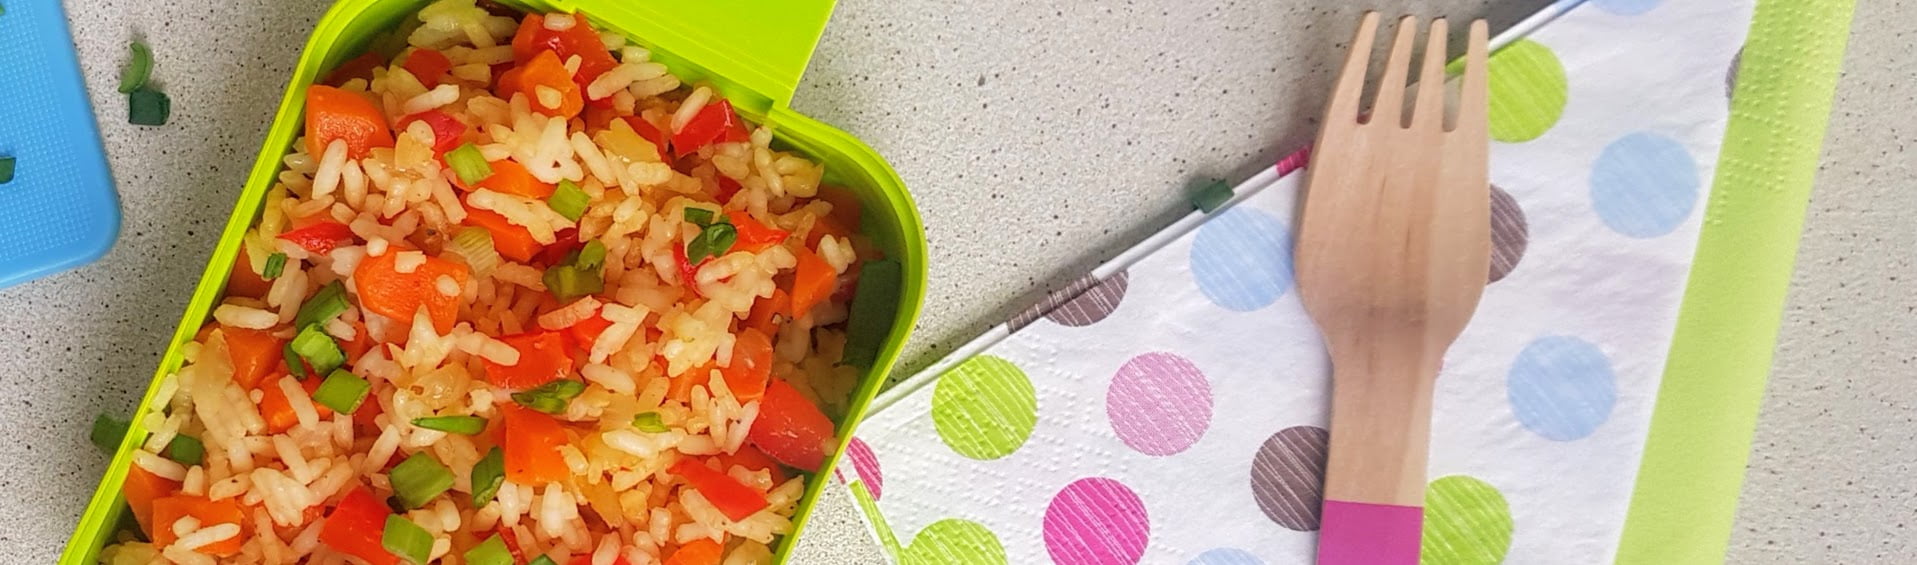 smazony ryz z warzywami dla dziecka